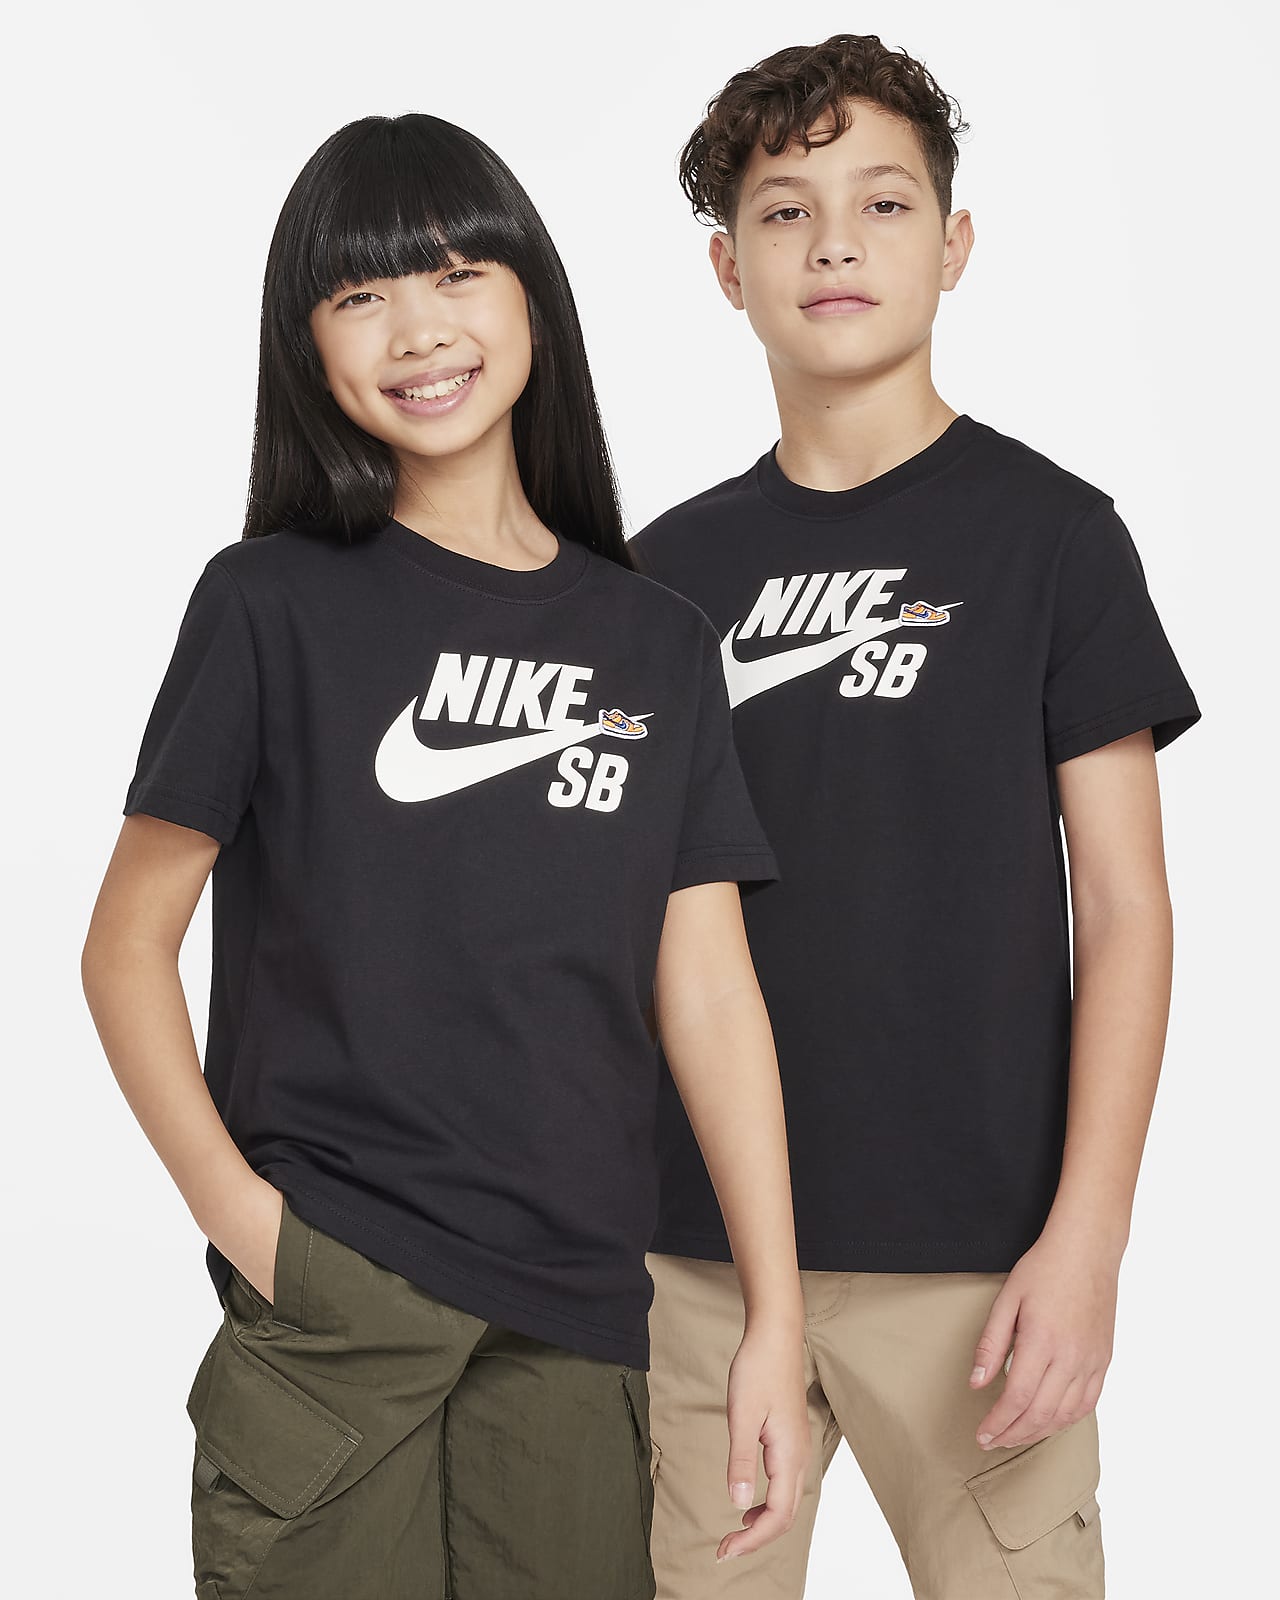 Nike SB T-shirt voor kids